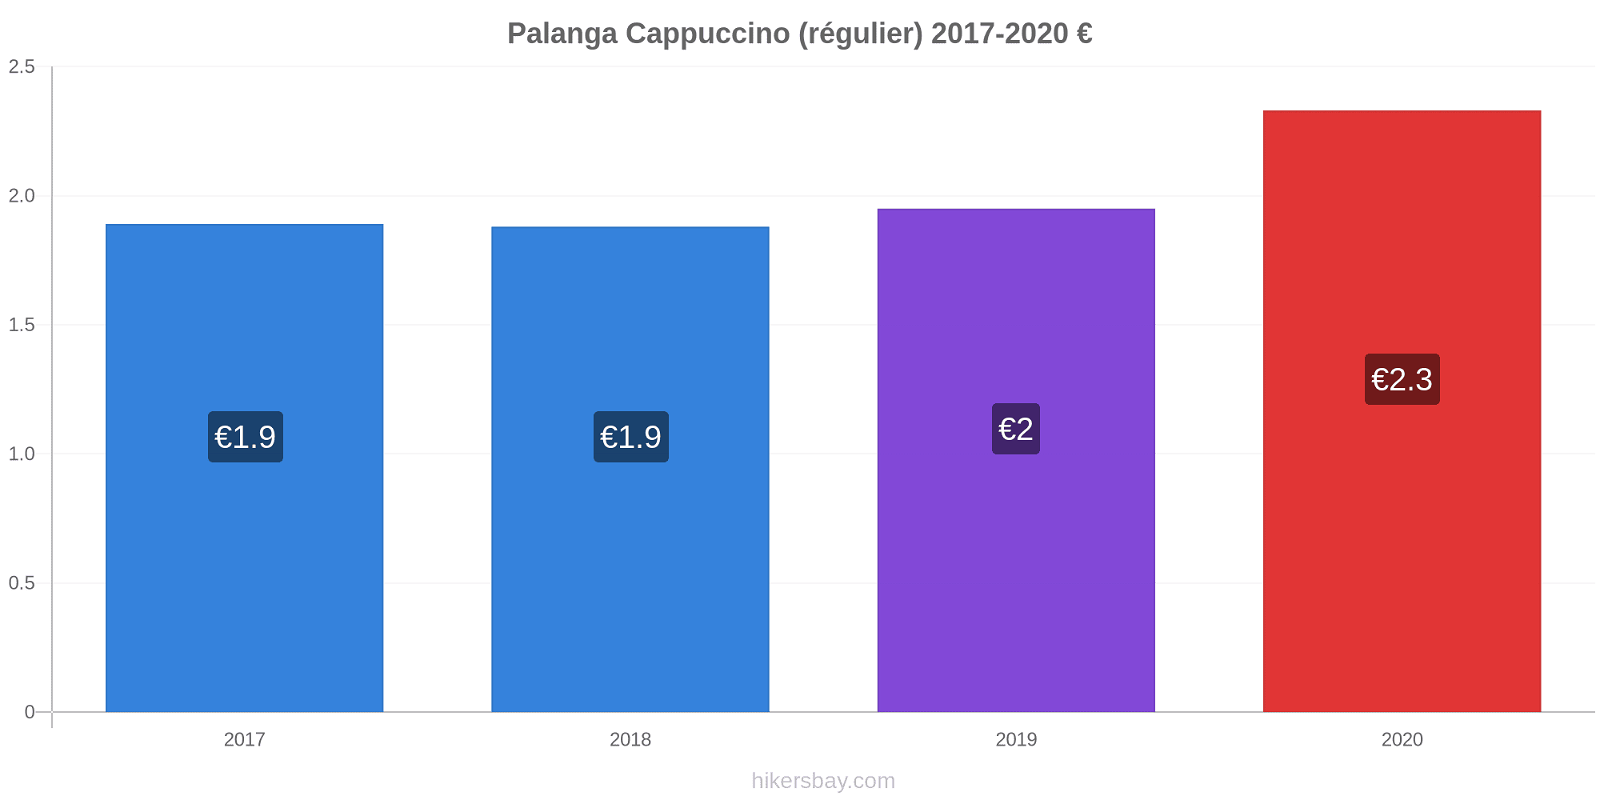 Palanga changements de prix Cappuccino (régulier) hikersbay.com